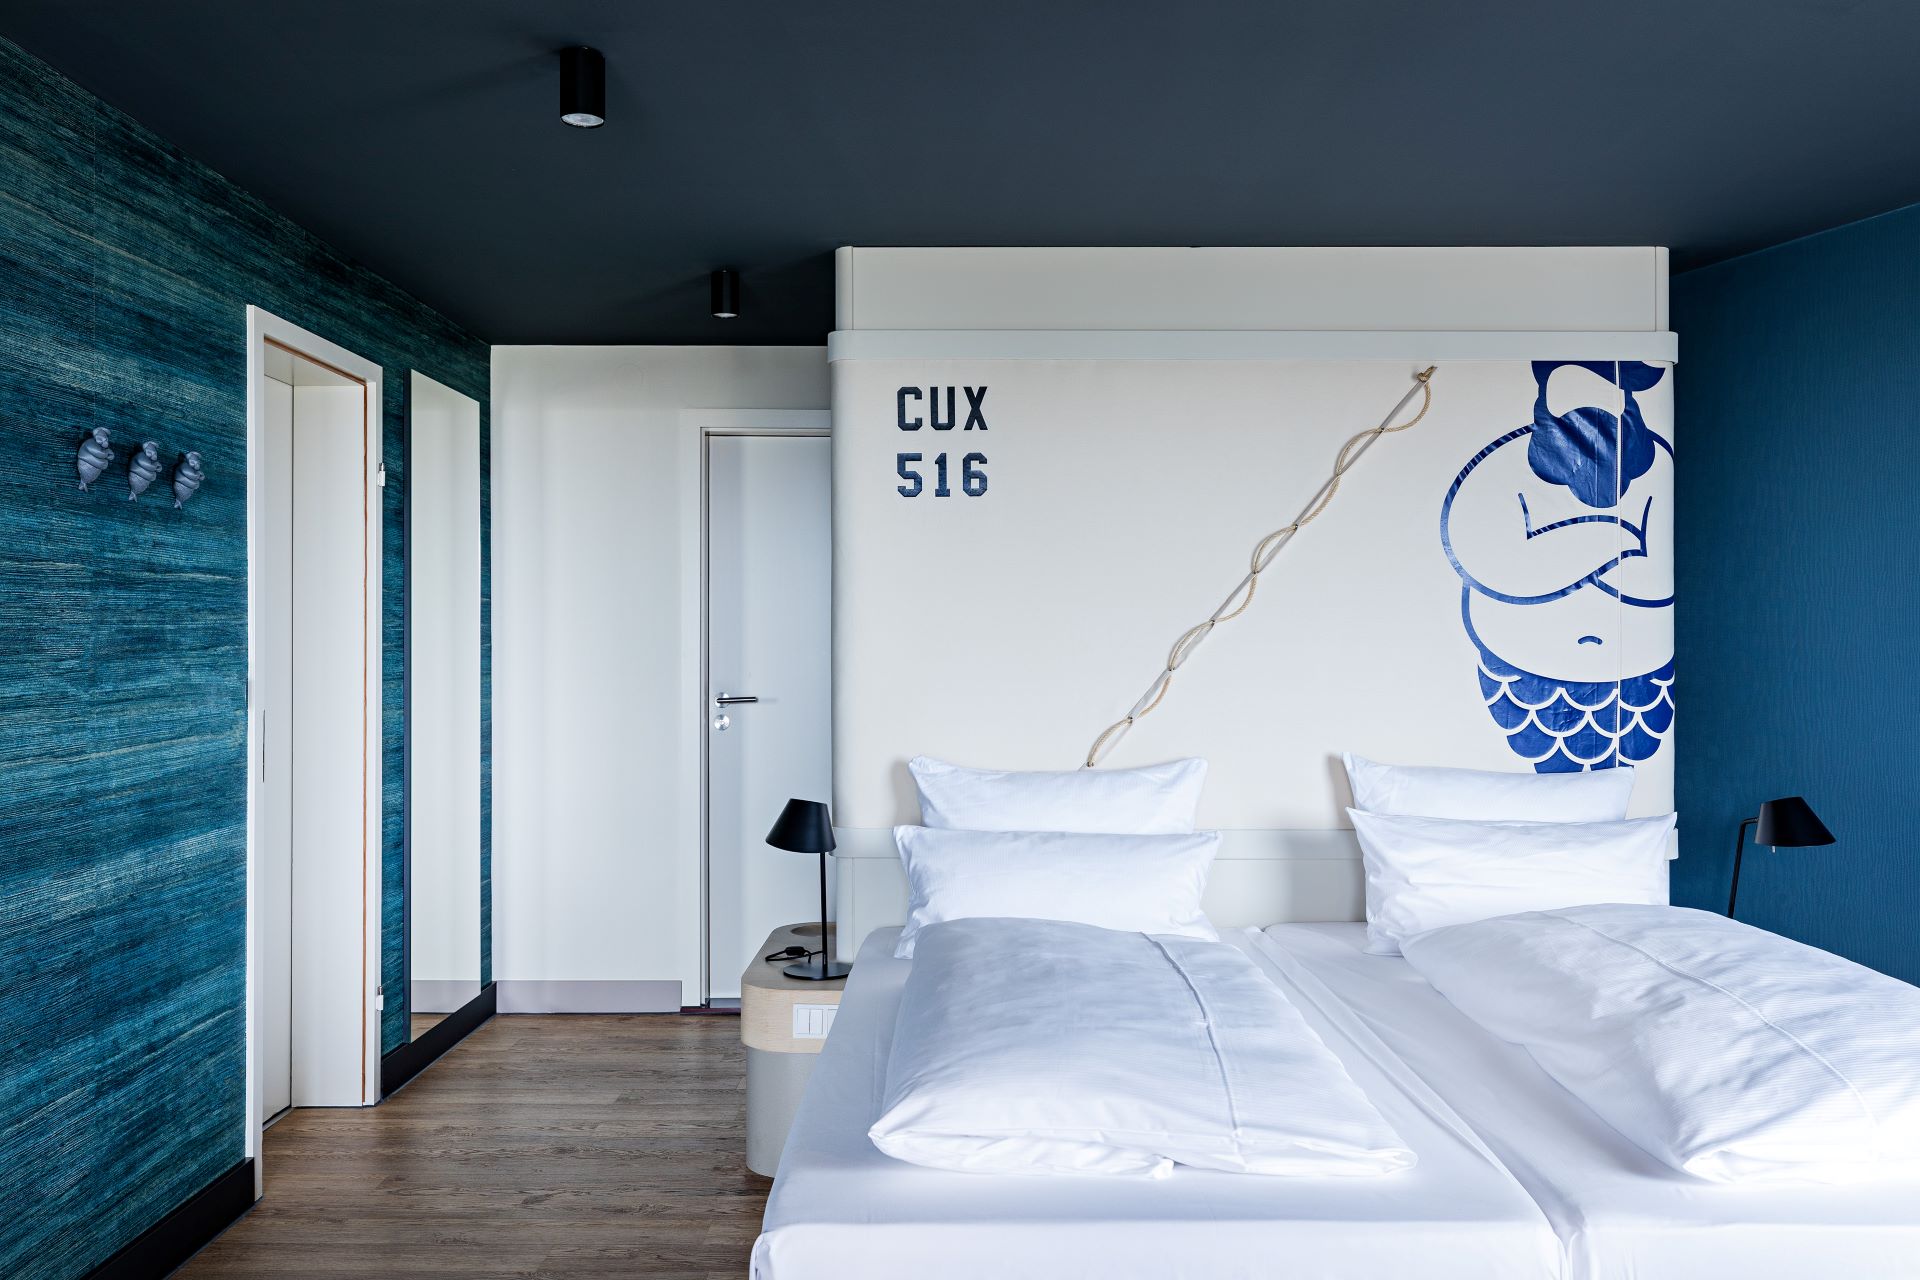 hotelbett interior design für zimmer im hotel donners cuxhaven durch formwaende einrichtung